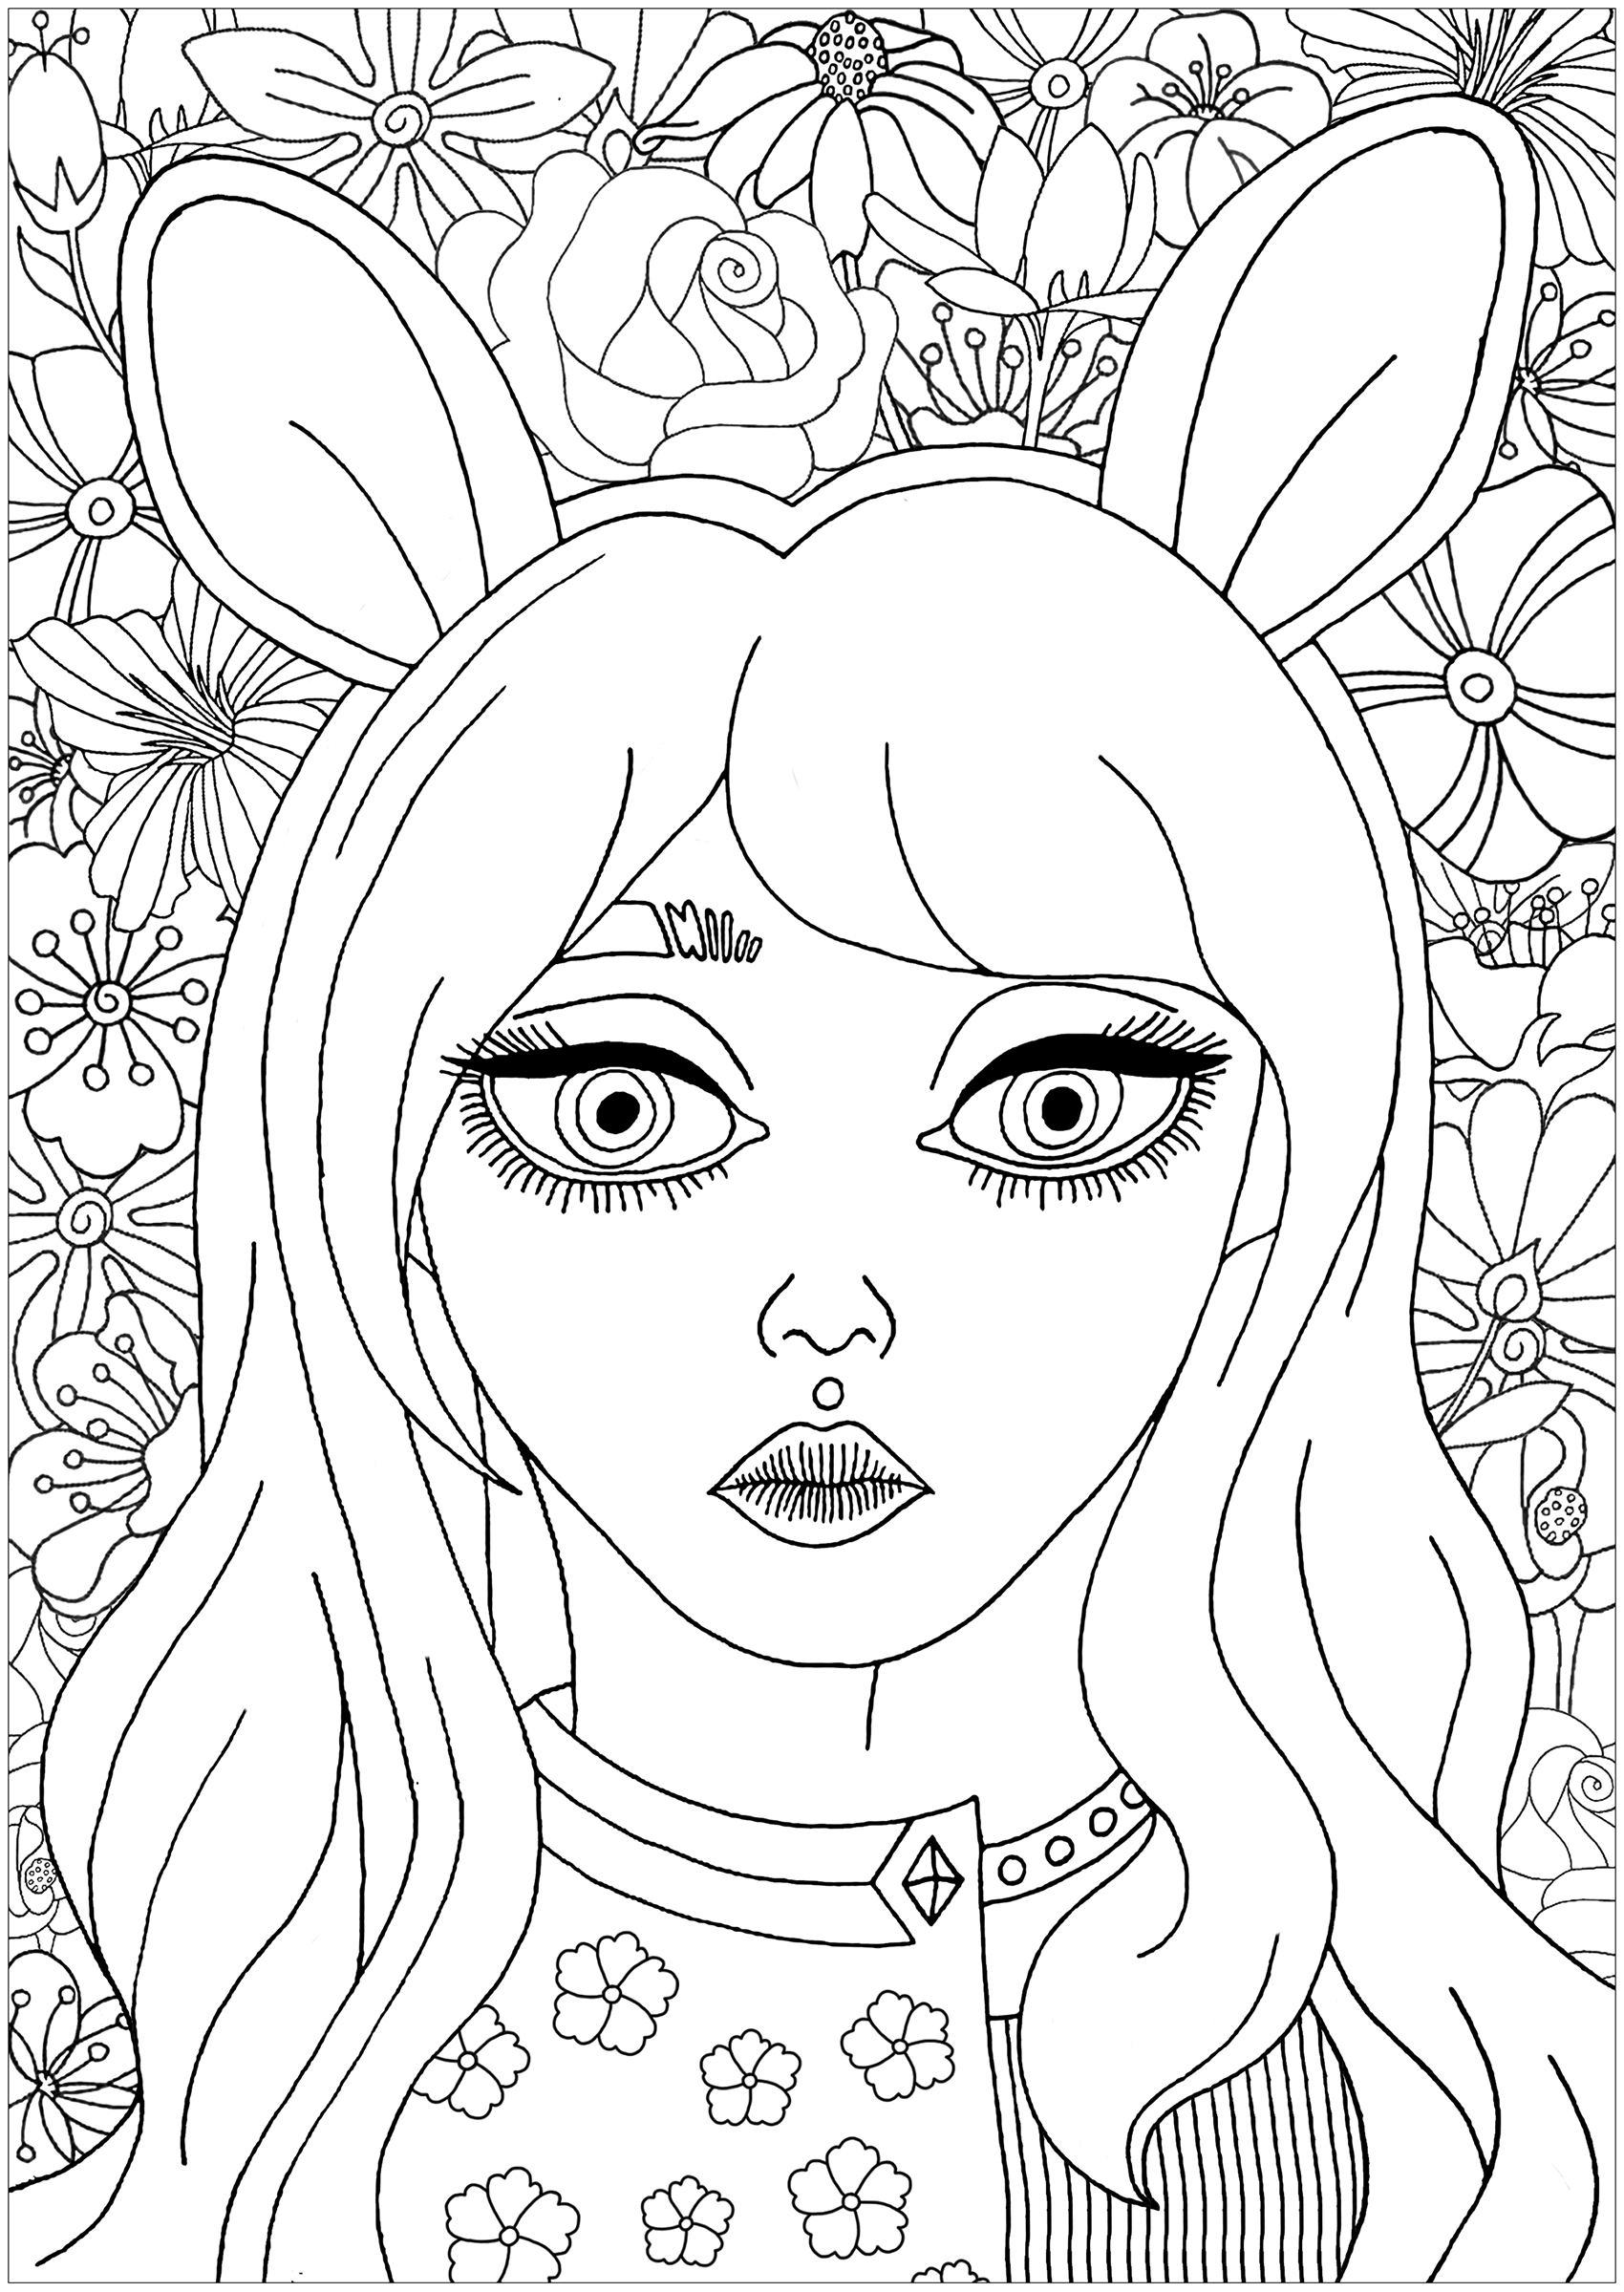 Retrato giro de uma rapariga com orelhas de coelho, com bonitas flores para colorir no fundo